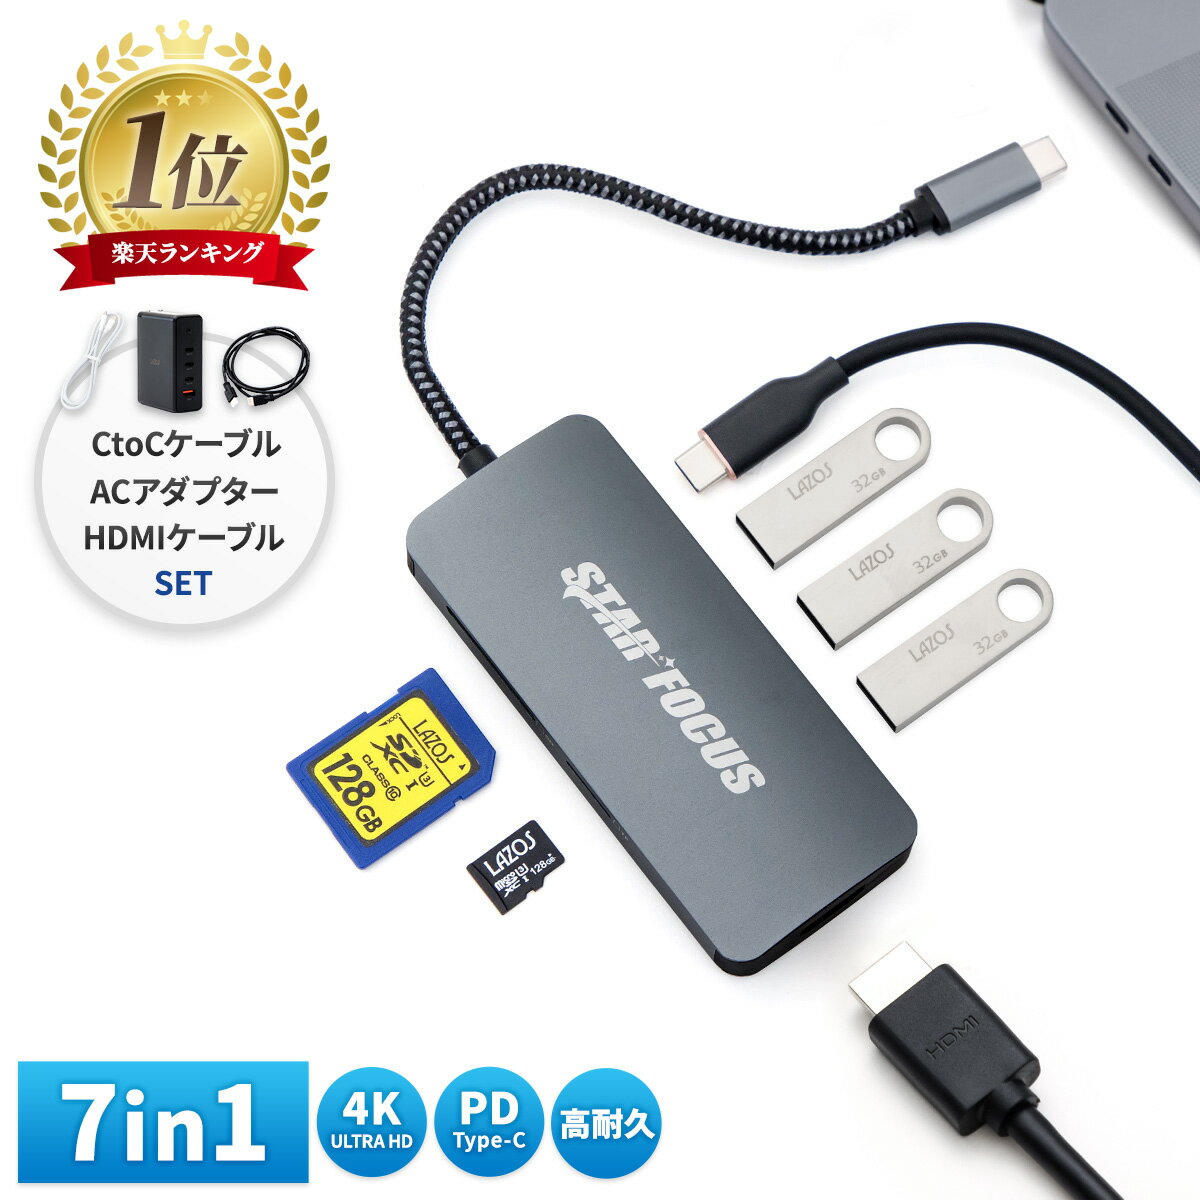 【5/16 エントリー P2倍】7in1 USB Type-Cハブ+CtoCケーブル+AC100W+HDMIケーブル